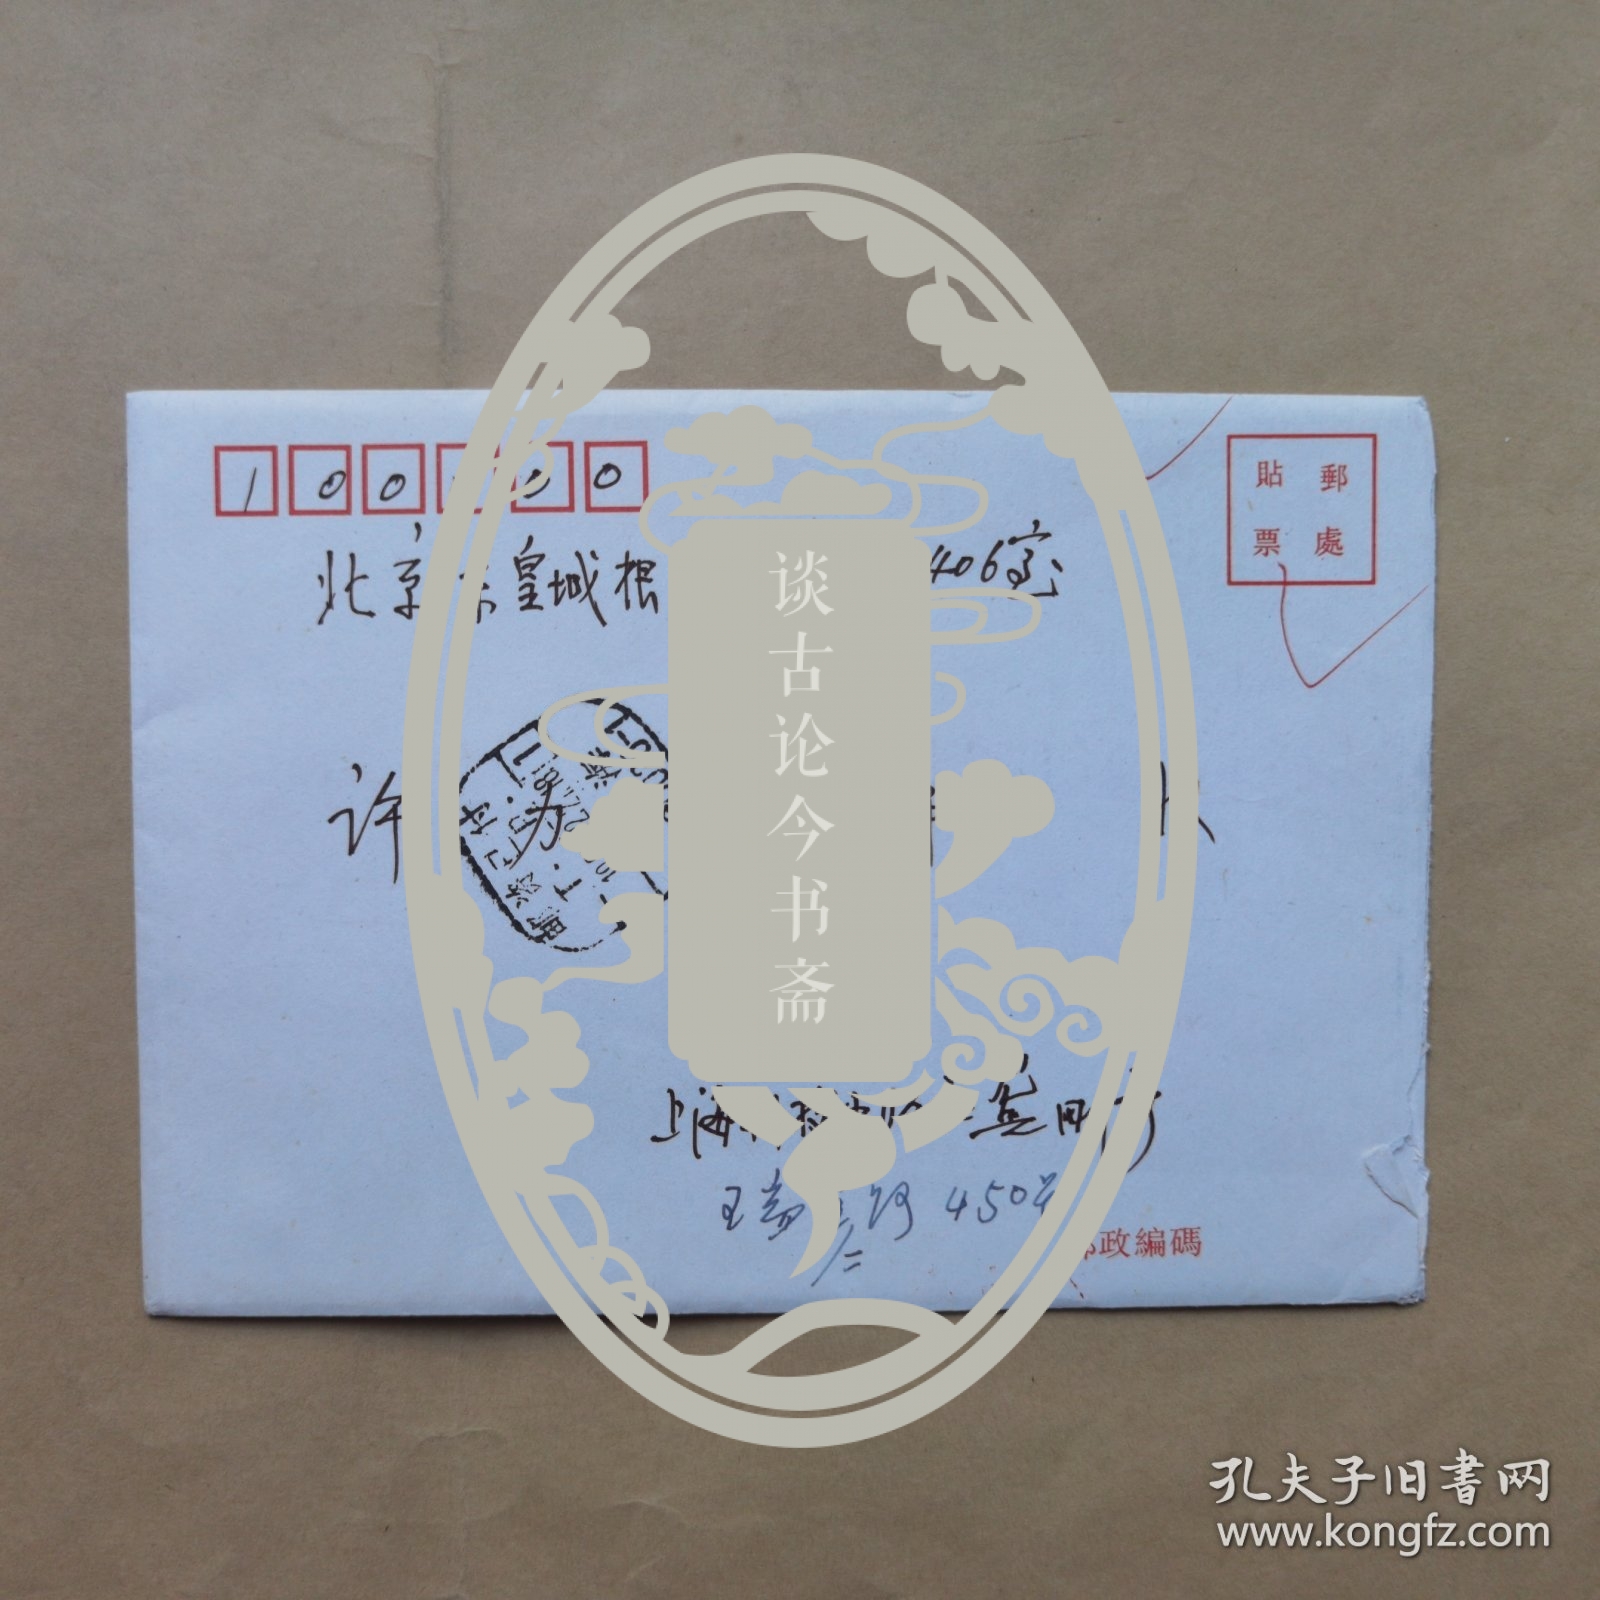 上海科技出版社龚刚1995年寄许力以贺卡1枚